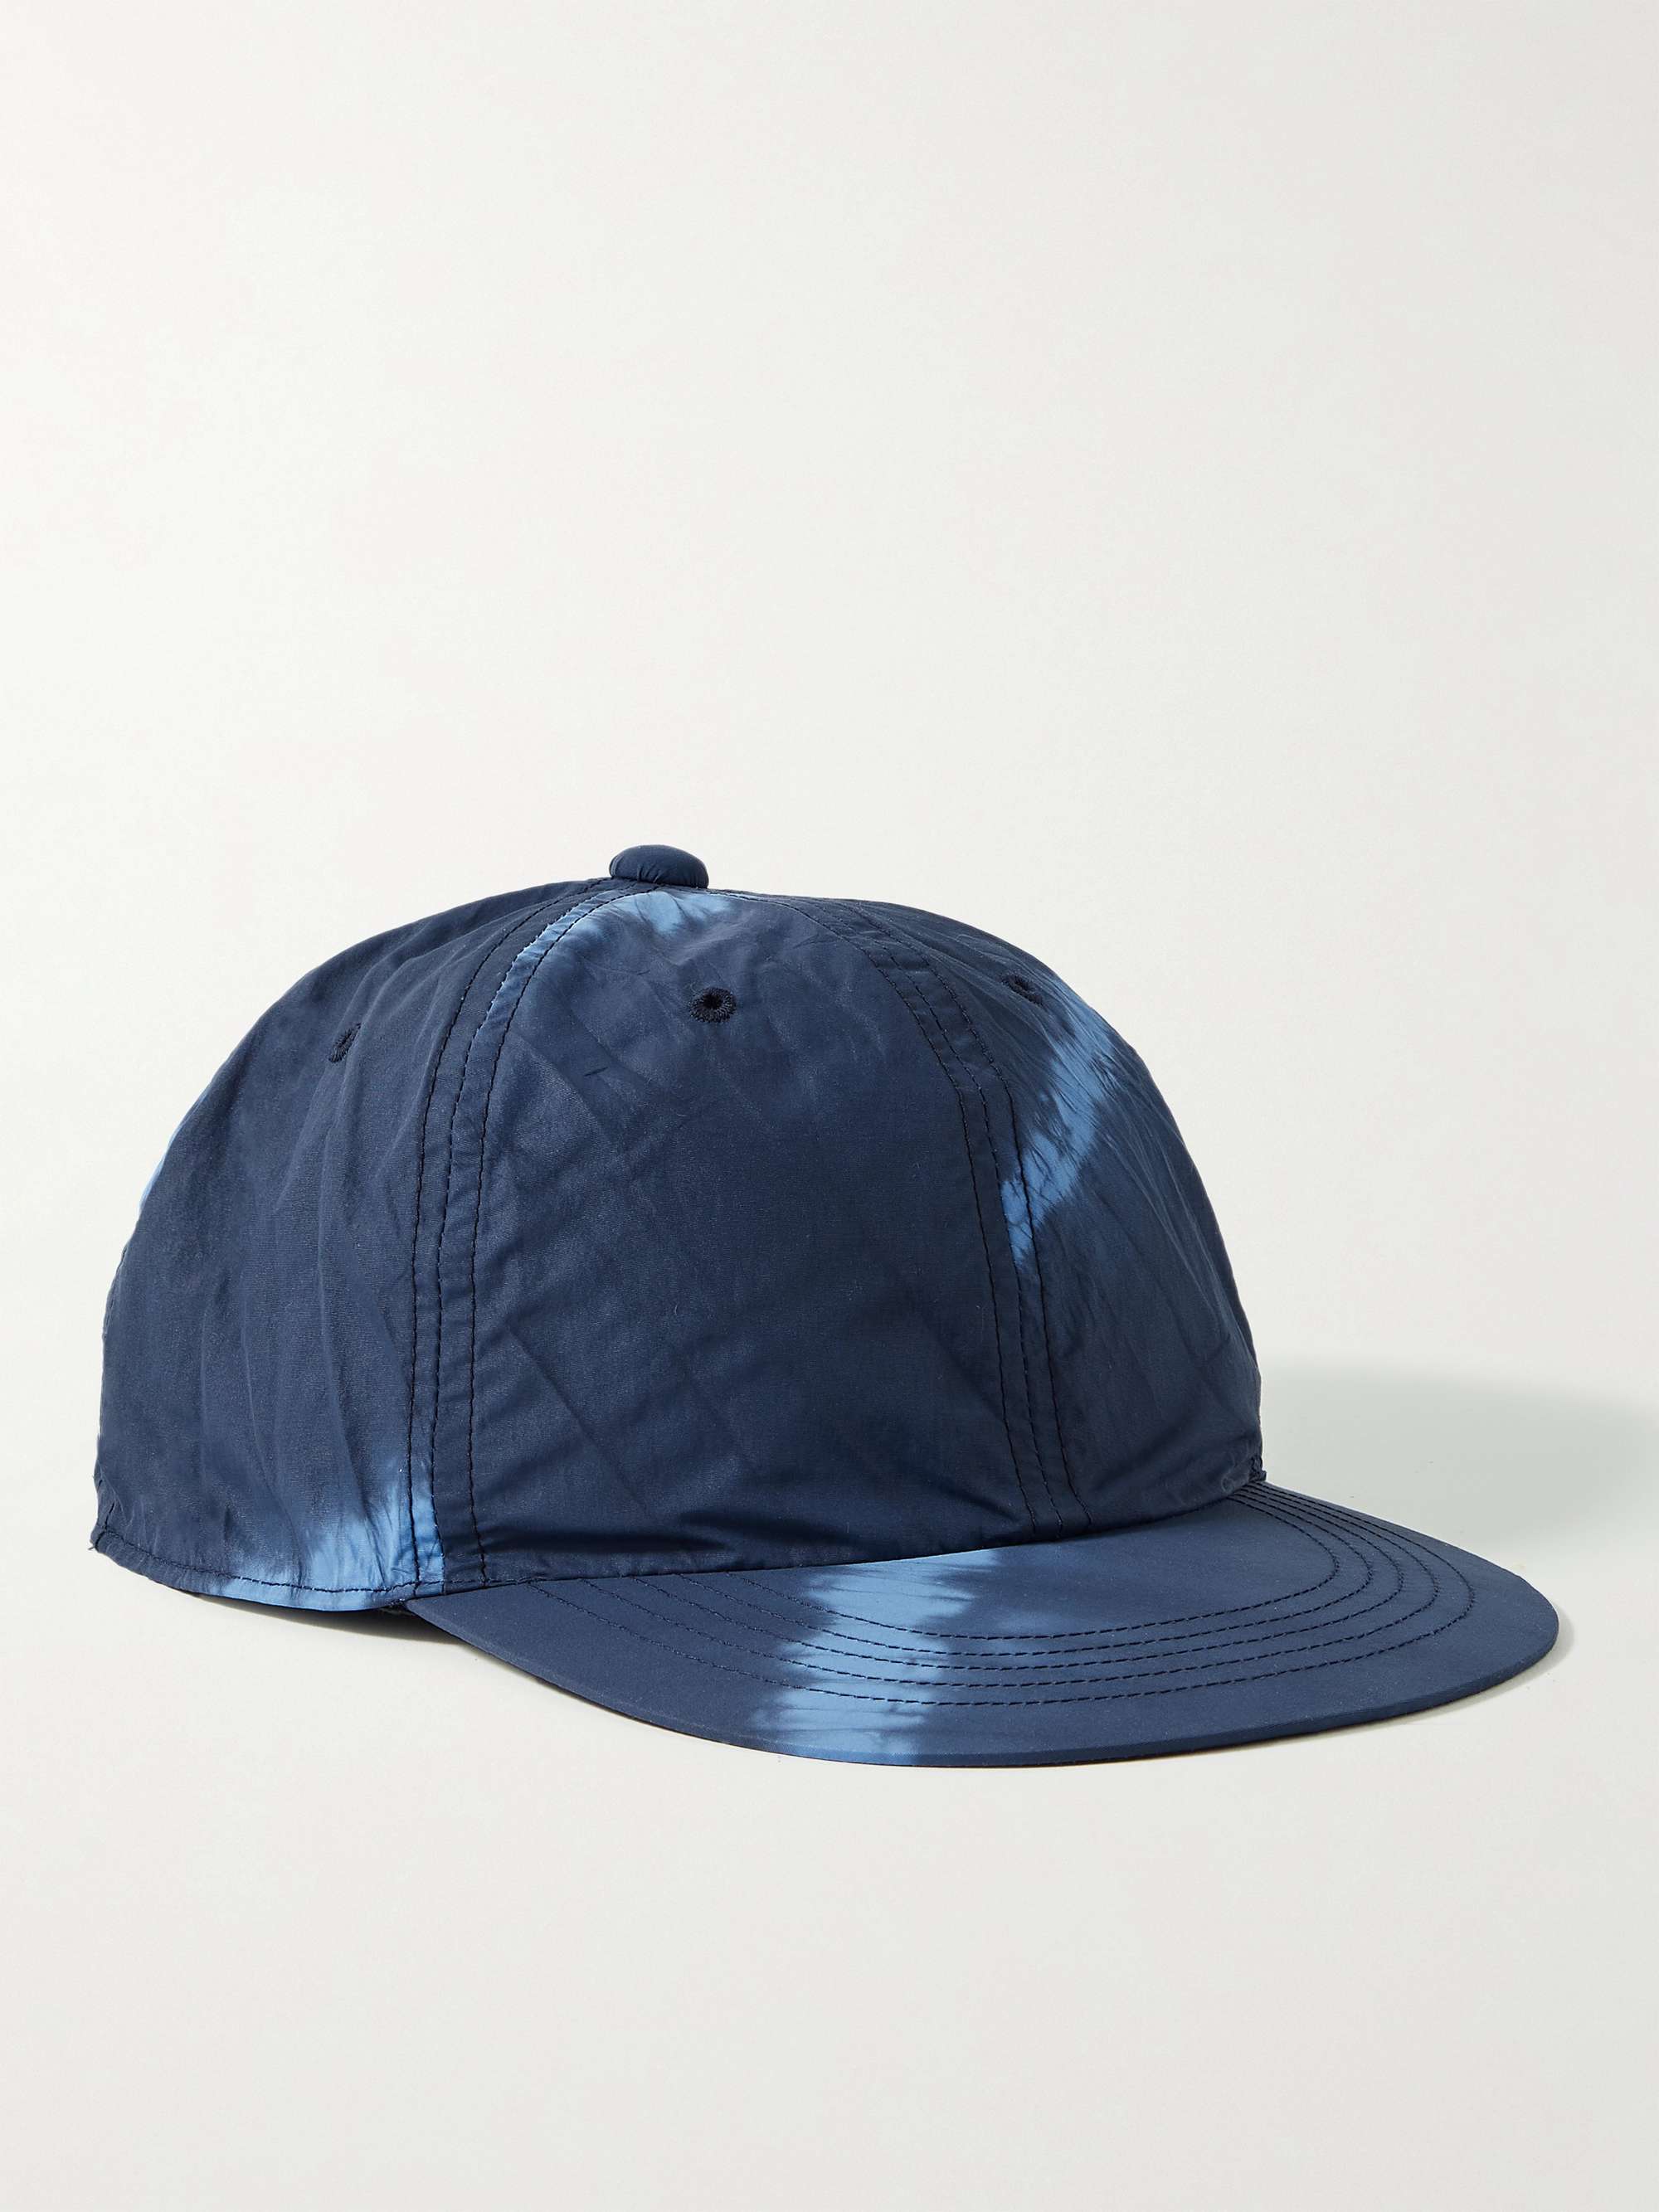 BLUE BLUE JAPAN Tie-Dyed Crinkled-Nylon Baseball Cap